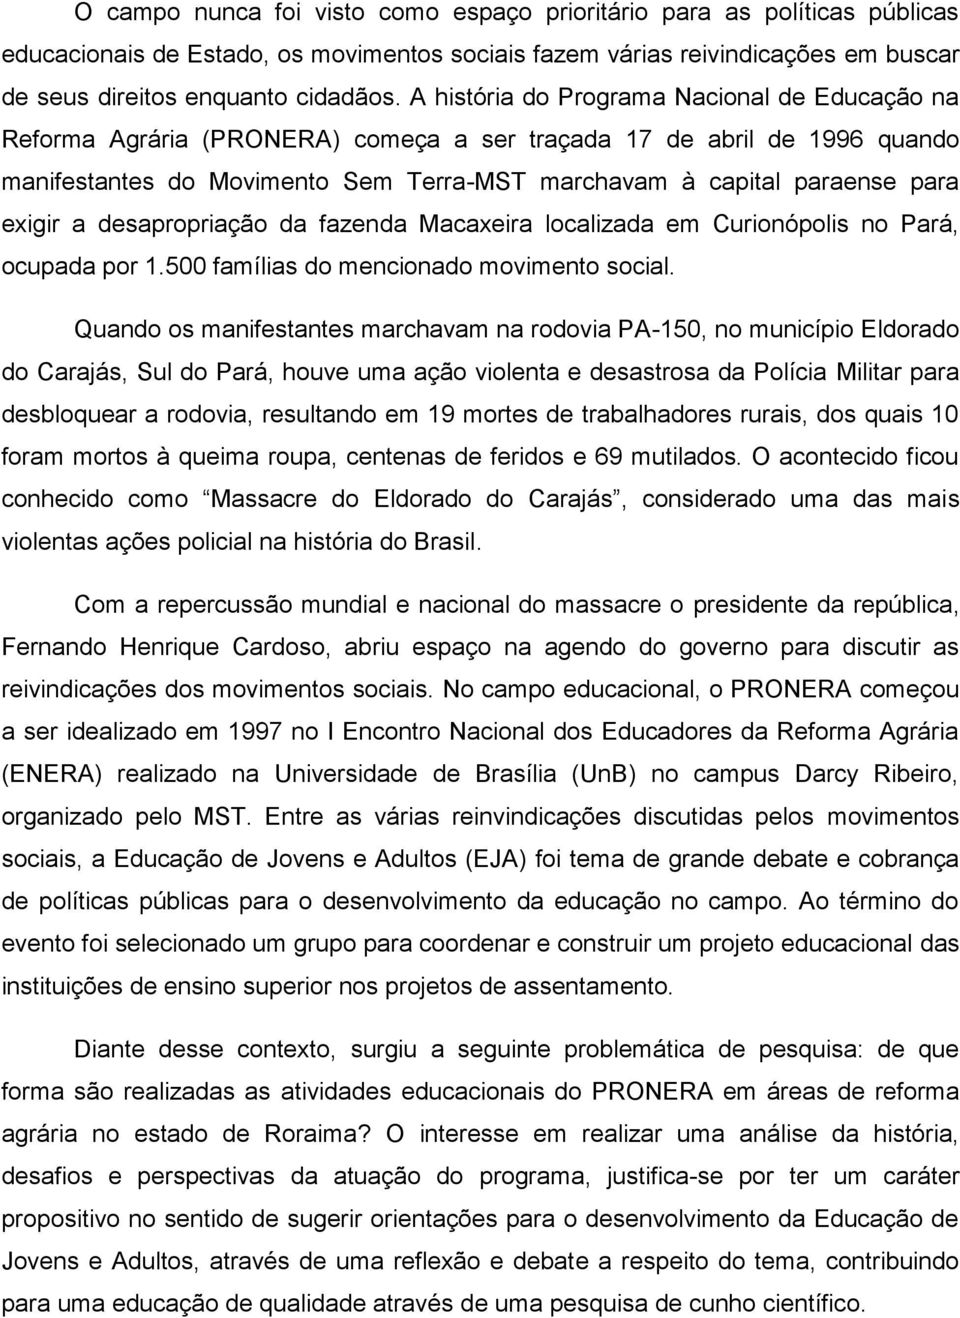 exigir a desapropriação da fazenda Macaxeira localizada em Curionópolis no Pará, ocupada por 1.500 famílias do mencionado movimento social.